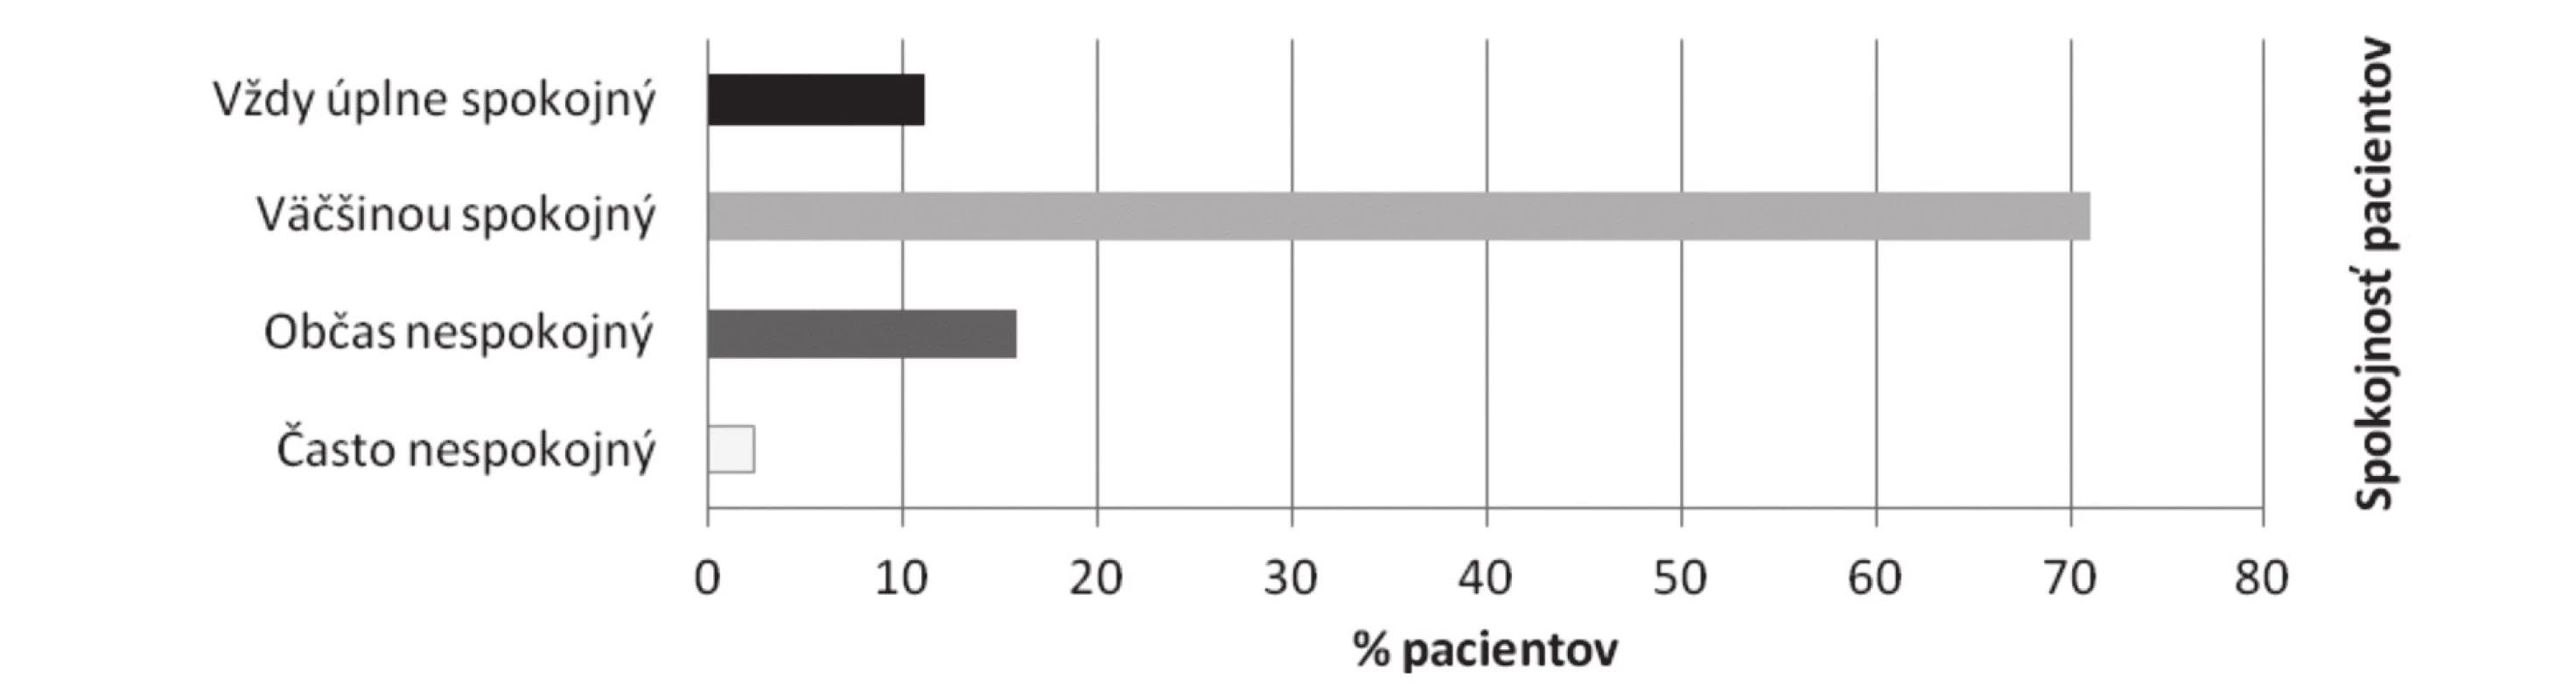 Celková spokojnosť pacientov s návštevou lekárne (n = 129)